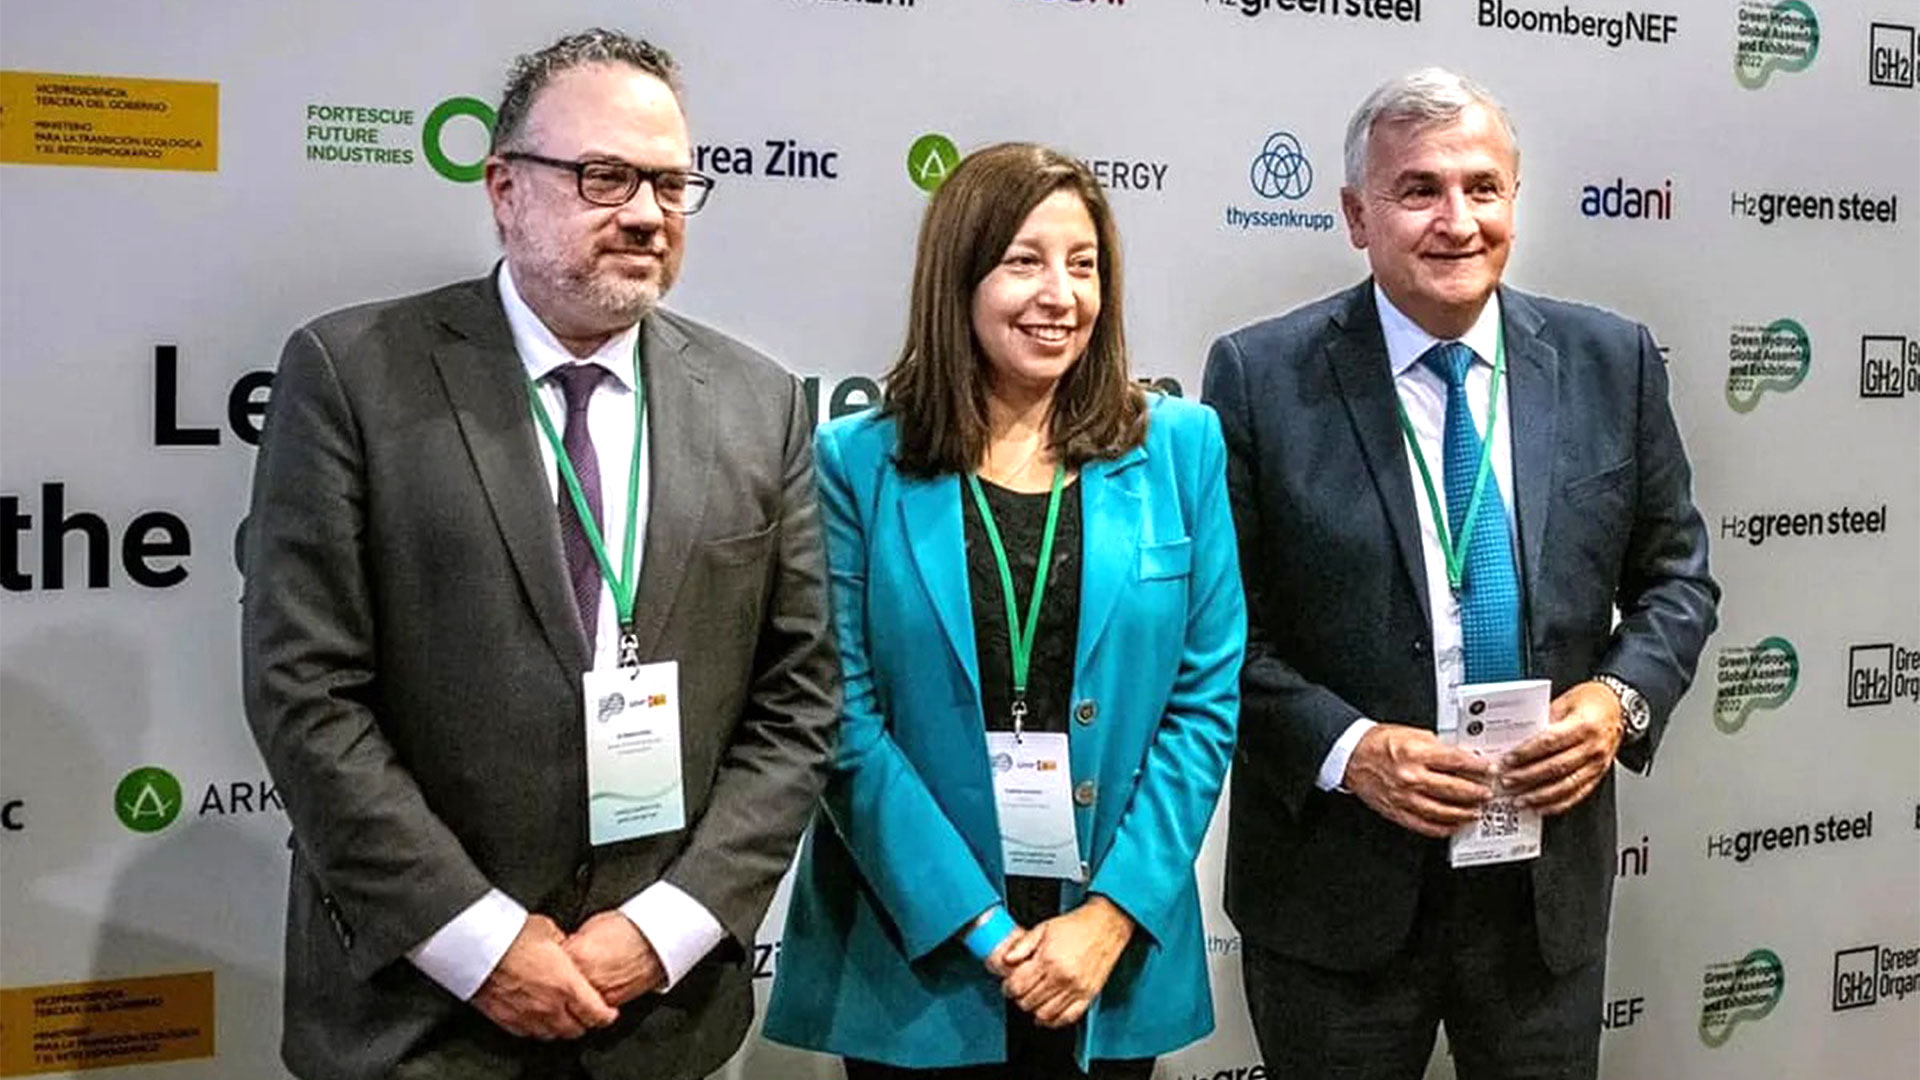 El exministro Kulfas junto a la gobernadora rionegrina, Arabela Carreras, y el gobernador de Jujuy, Gerardo Morales, durante la Conferencia sobre el Hidrógeno en Barcelona